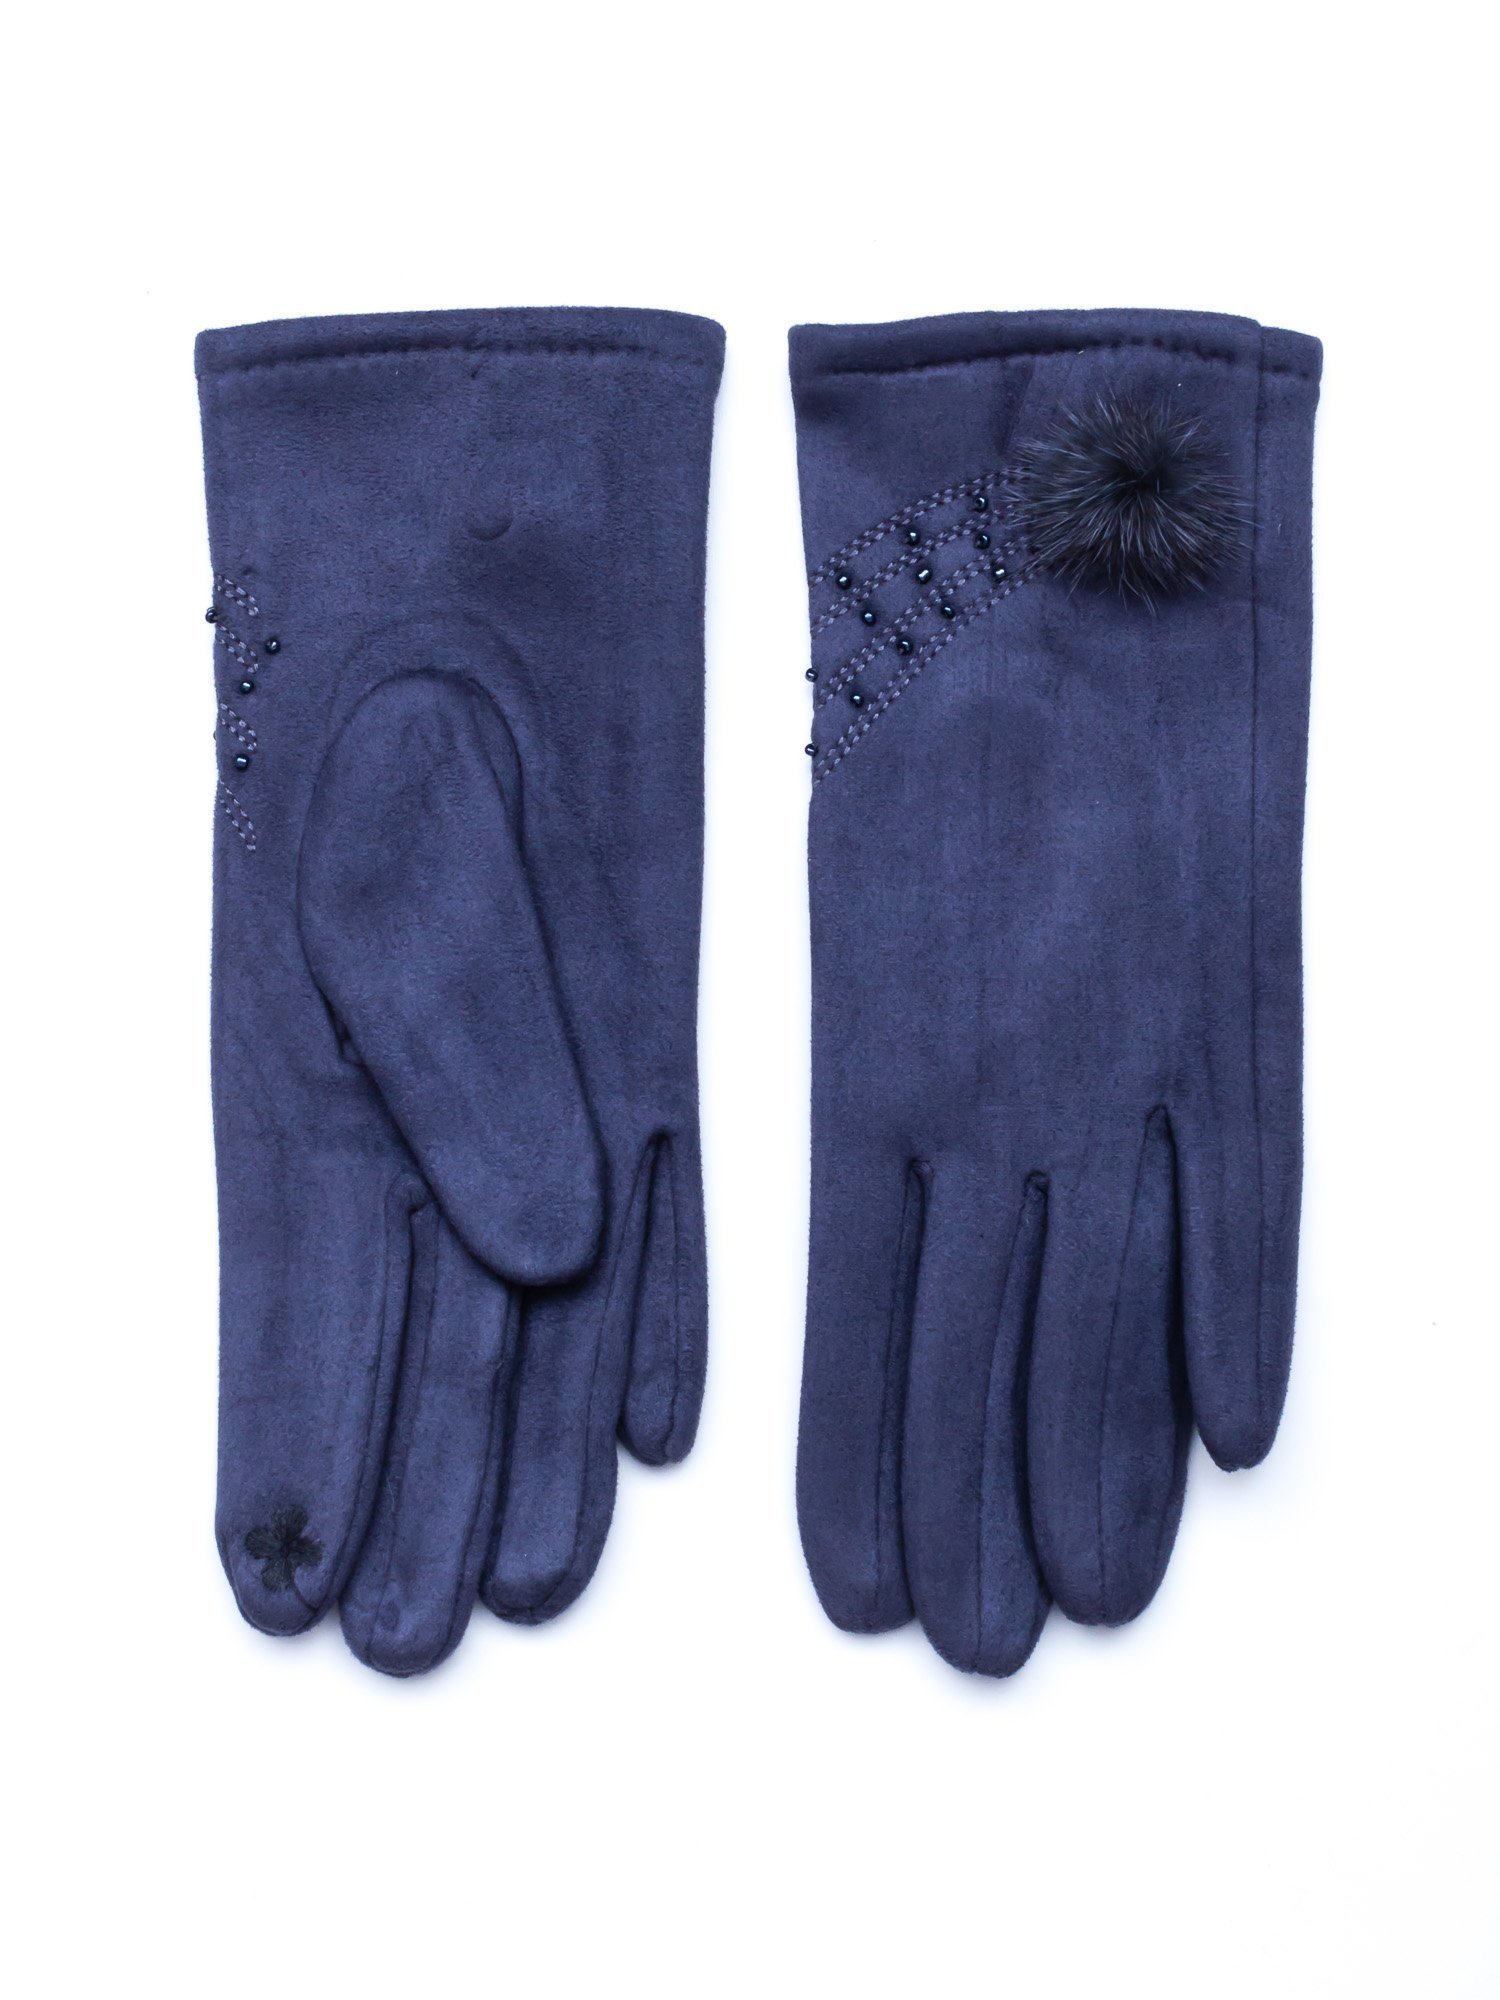 Dámske šedé rukavice - M